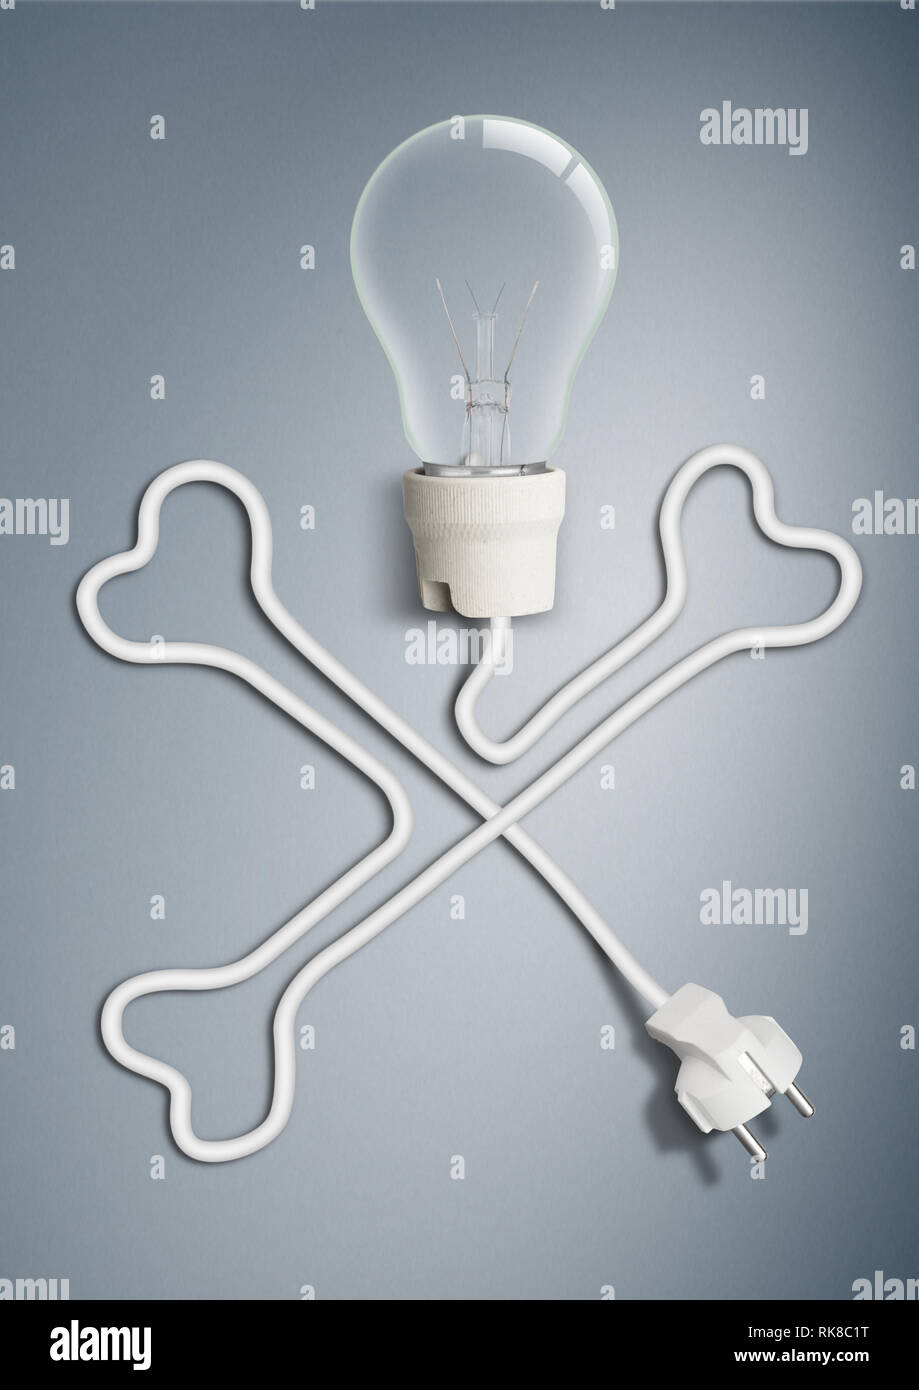 Concepto de electricidad, la bombilla con cable como el hueso del cráneo Foto de stock